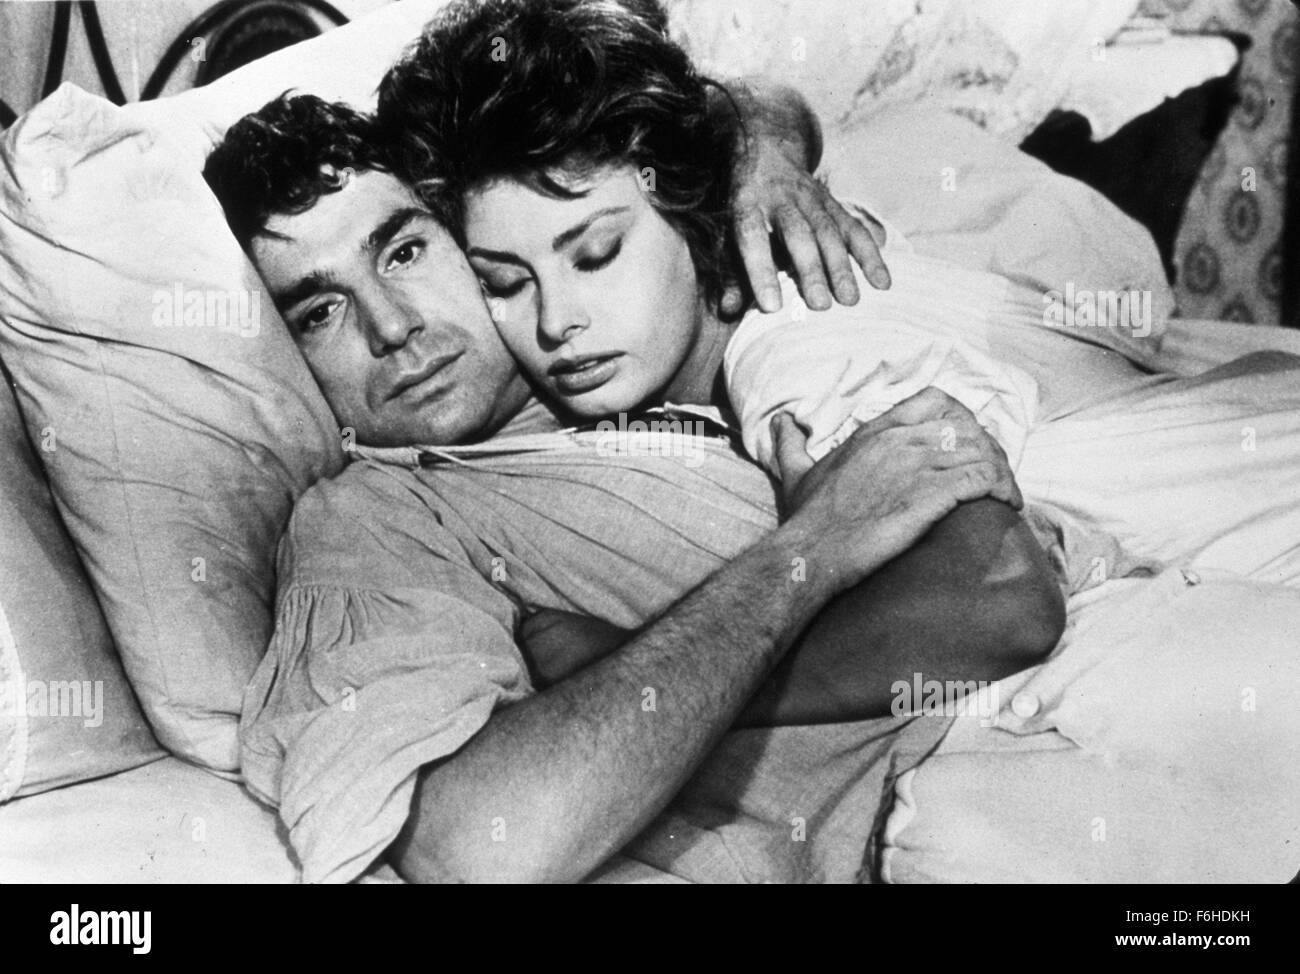 1961, el título de la película: MADAME, Director: Christian, Studio: Embajada, Foto: cama (DE/EN), Christian-JACQUE, Robert Hossein, Sophia Loren. (Crédito de la imagen: SNAP). Foto de stock